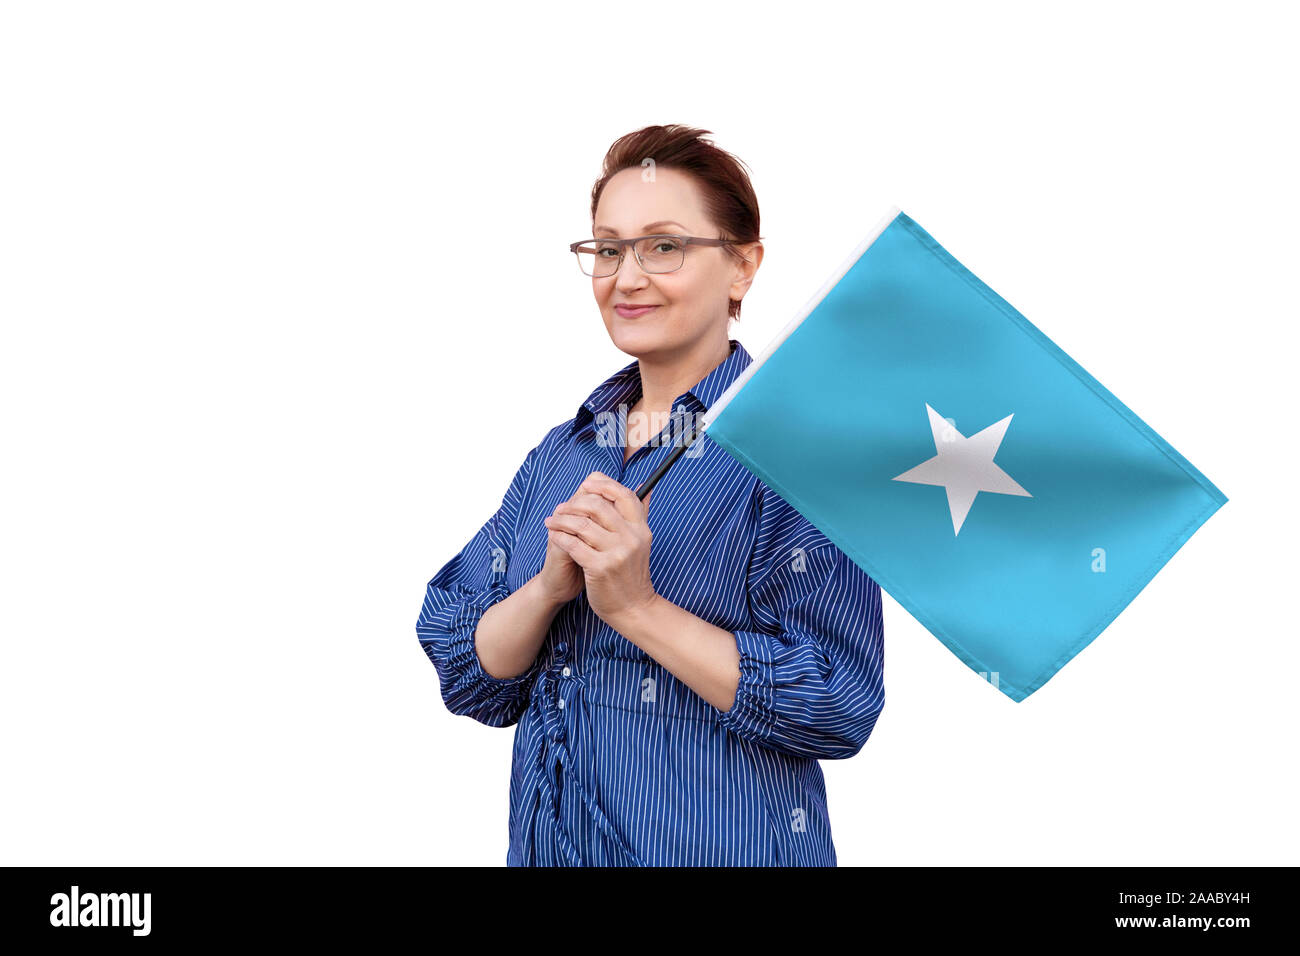 Somalia Flagge. Frau mit Flagge. Schönes Portrait der Dame im mittleren Alter 40 50 Jahre alt, eine große Flagge mit weissem Hintergrund. Stockfoto